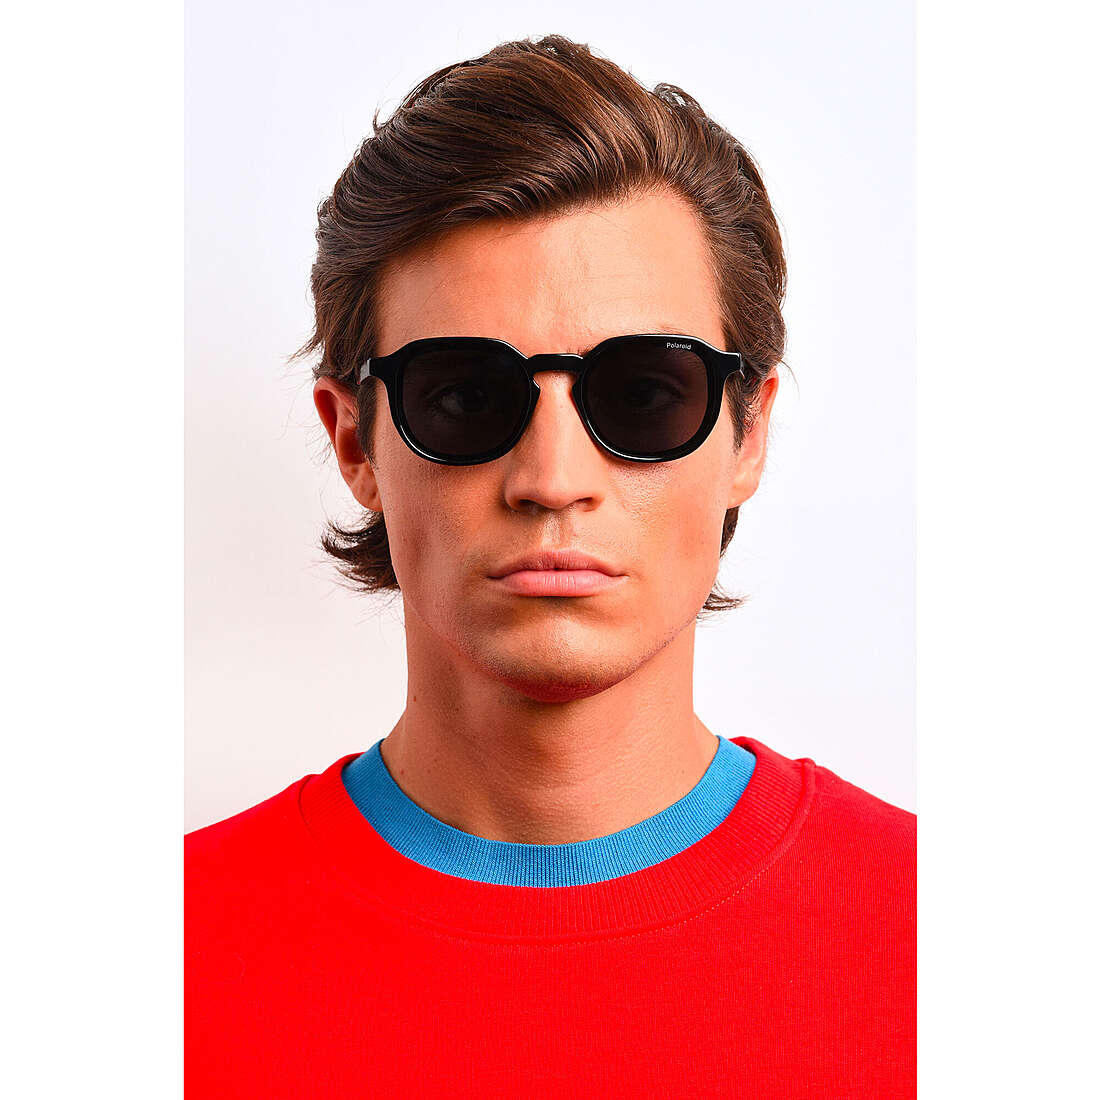 Polaroid occhiali da sole Cool uomo 20429880752M9 indosso